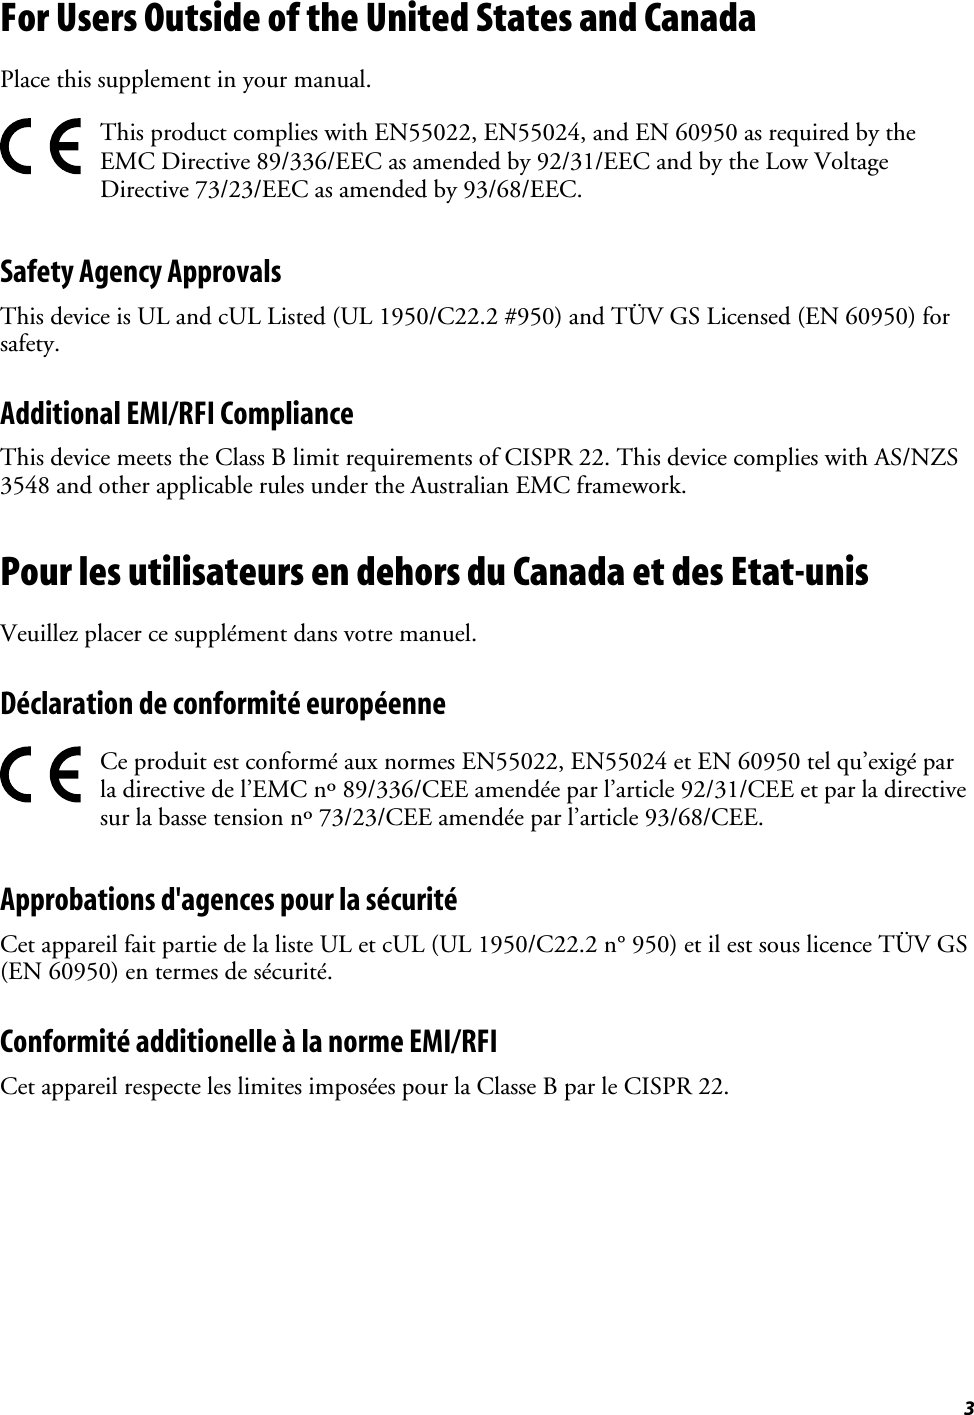 3For Users Outside of the United States and CanadaPlace this supplement in your manual.This product complies with EN55022, EN55024, and EN 60950 as required by theEMC Directive 89/336/EEC as amended by 92/31/EEC and by the Low VoltageDirective 73/23/EEC as amended by 93/68/EEC.Safety Agency ApprovalsThis device is UL and cUL Listed (UL 1950/C22.2 #950) and TÜV GS Licensed (EN 60950) forsafety.Additional EMI/RFI ComplianceThis device meets the Class B limit requirements of CISPR 22. This device complies with AS/NZS3548 and other applicable rules under the Australian EMC framework.Pour les utilisateurs en dehors du Canada et des Etat-unisVeuillez placer ce supplément dans votre manuel.Déclaration de conformité européenneCe produit est conformé aux normes EN55022, EN55024 et EN 60950 tel qu’exigé parla directive de l’EMC nº 89/336/CEE amendée par l’article 92/31/CEE et par la directivesur la basse tension nº 73/23/CEE amendée par l’article 93/68/CEE.Approbations d&apos;agences pour la sécuritéCet appareil fait partie de la liste UL et cUL (UL 1950/C22.2 n° 950) et il est sous licence TÜV GS(EN 60950) en termes de sécurité.Conformité additionelle à la norme EMI/RFICet appareil respecte les limites imposées pour la Classe B par le CISPR 22.